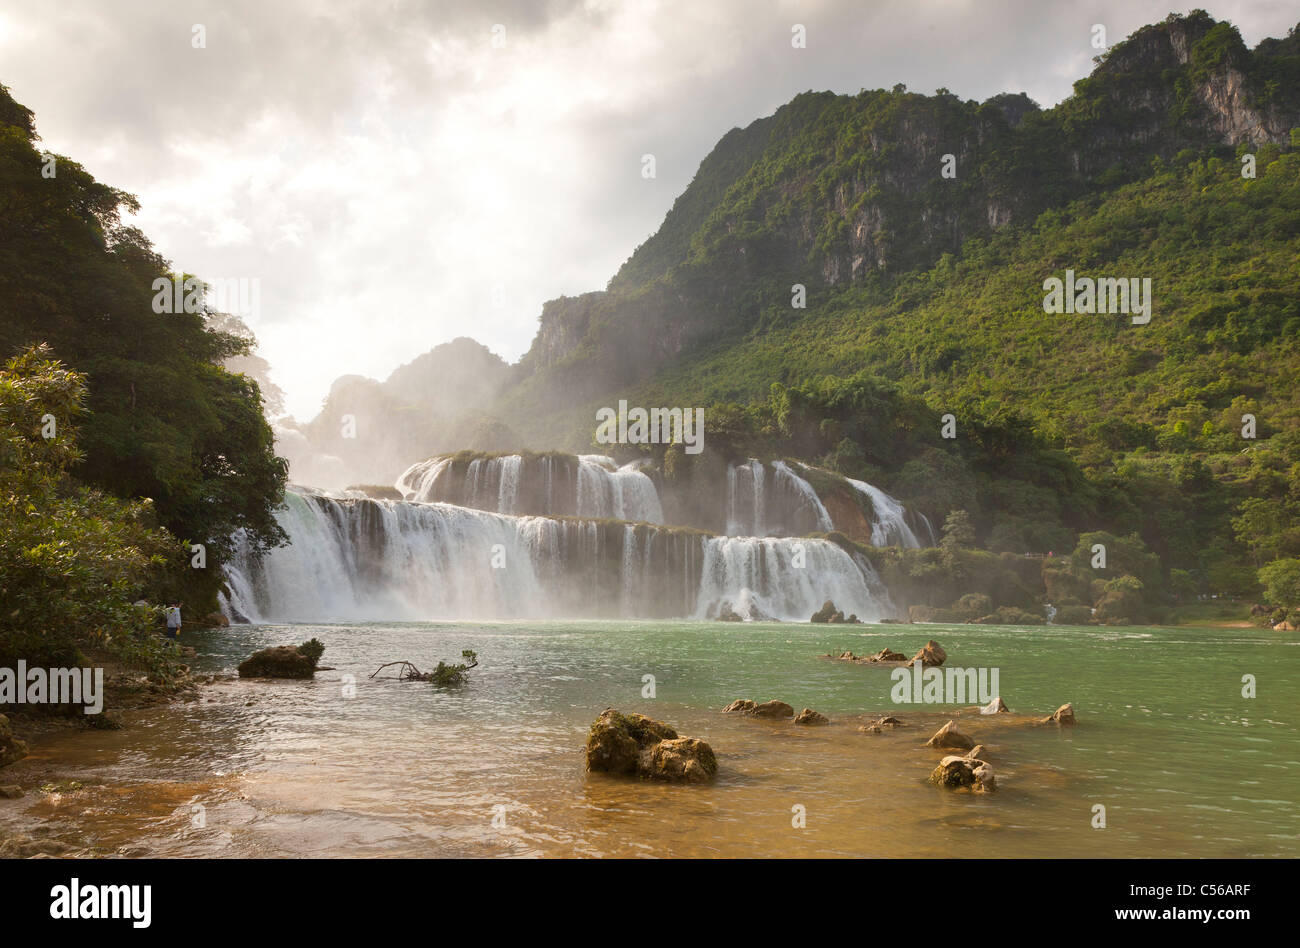 Banyue ou sur la cascade de Ban Gioc Vietnamiens du Nord et du sud de la frontière chinoise, une destination touristique populaire Banque D'Images